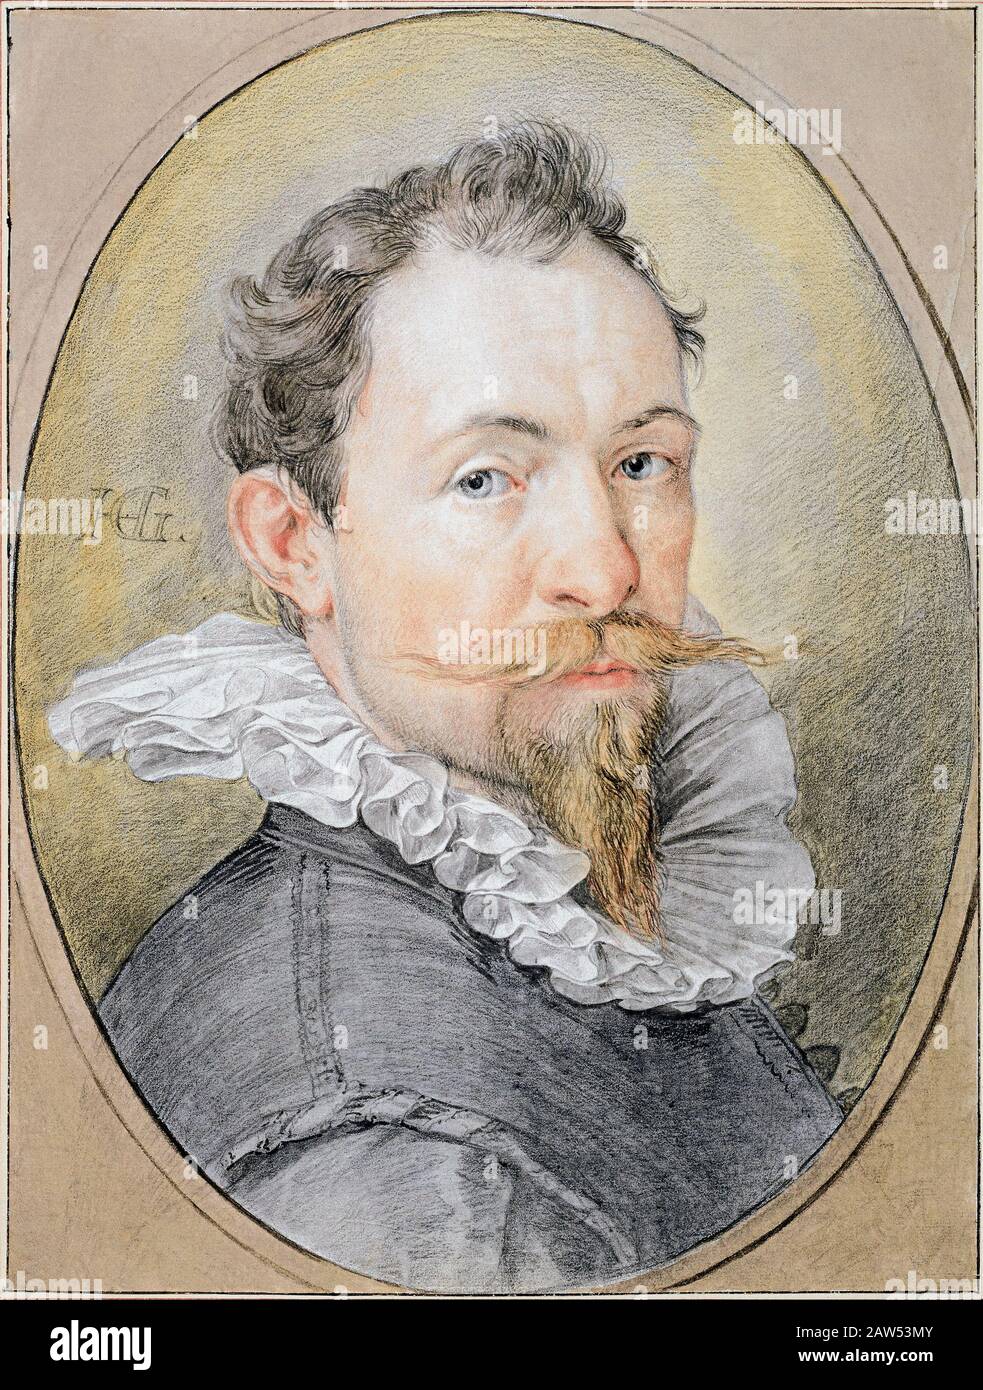 Der aus dem deutschen Stil stammende holländische Maler Hendrick Goltzius (* 1558; † 1617) . Selbstporträt, 1593 Ca, Museum von Albertina, Vien Stockfoto